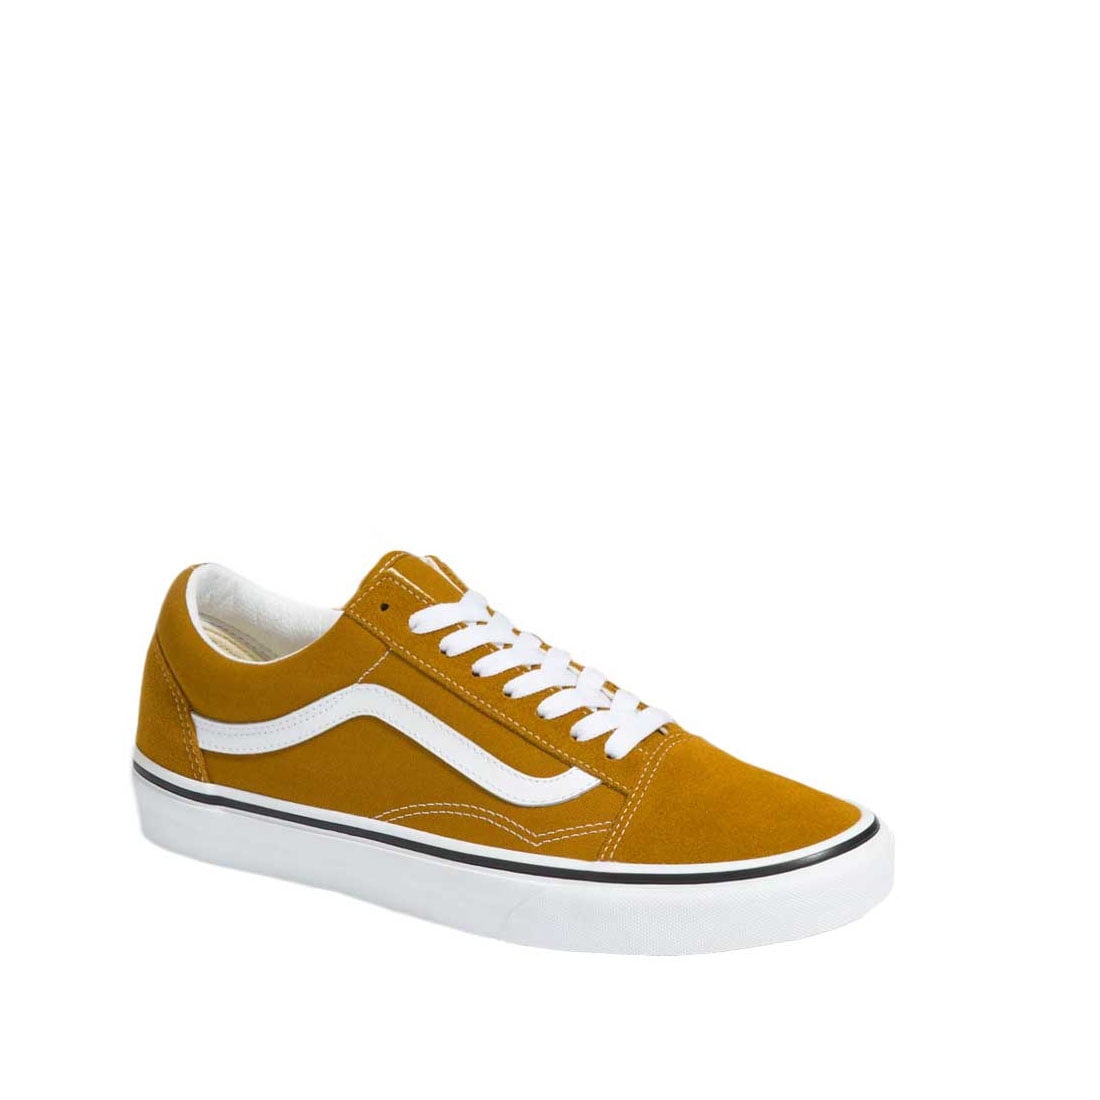 Vans Old Skool shoe size 8 Men/9.5 Women Casual Golden Brown/True White - Walmart.com